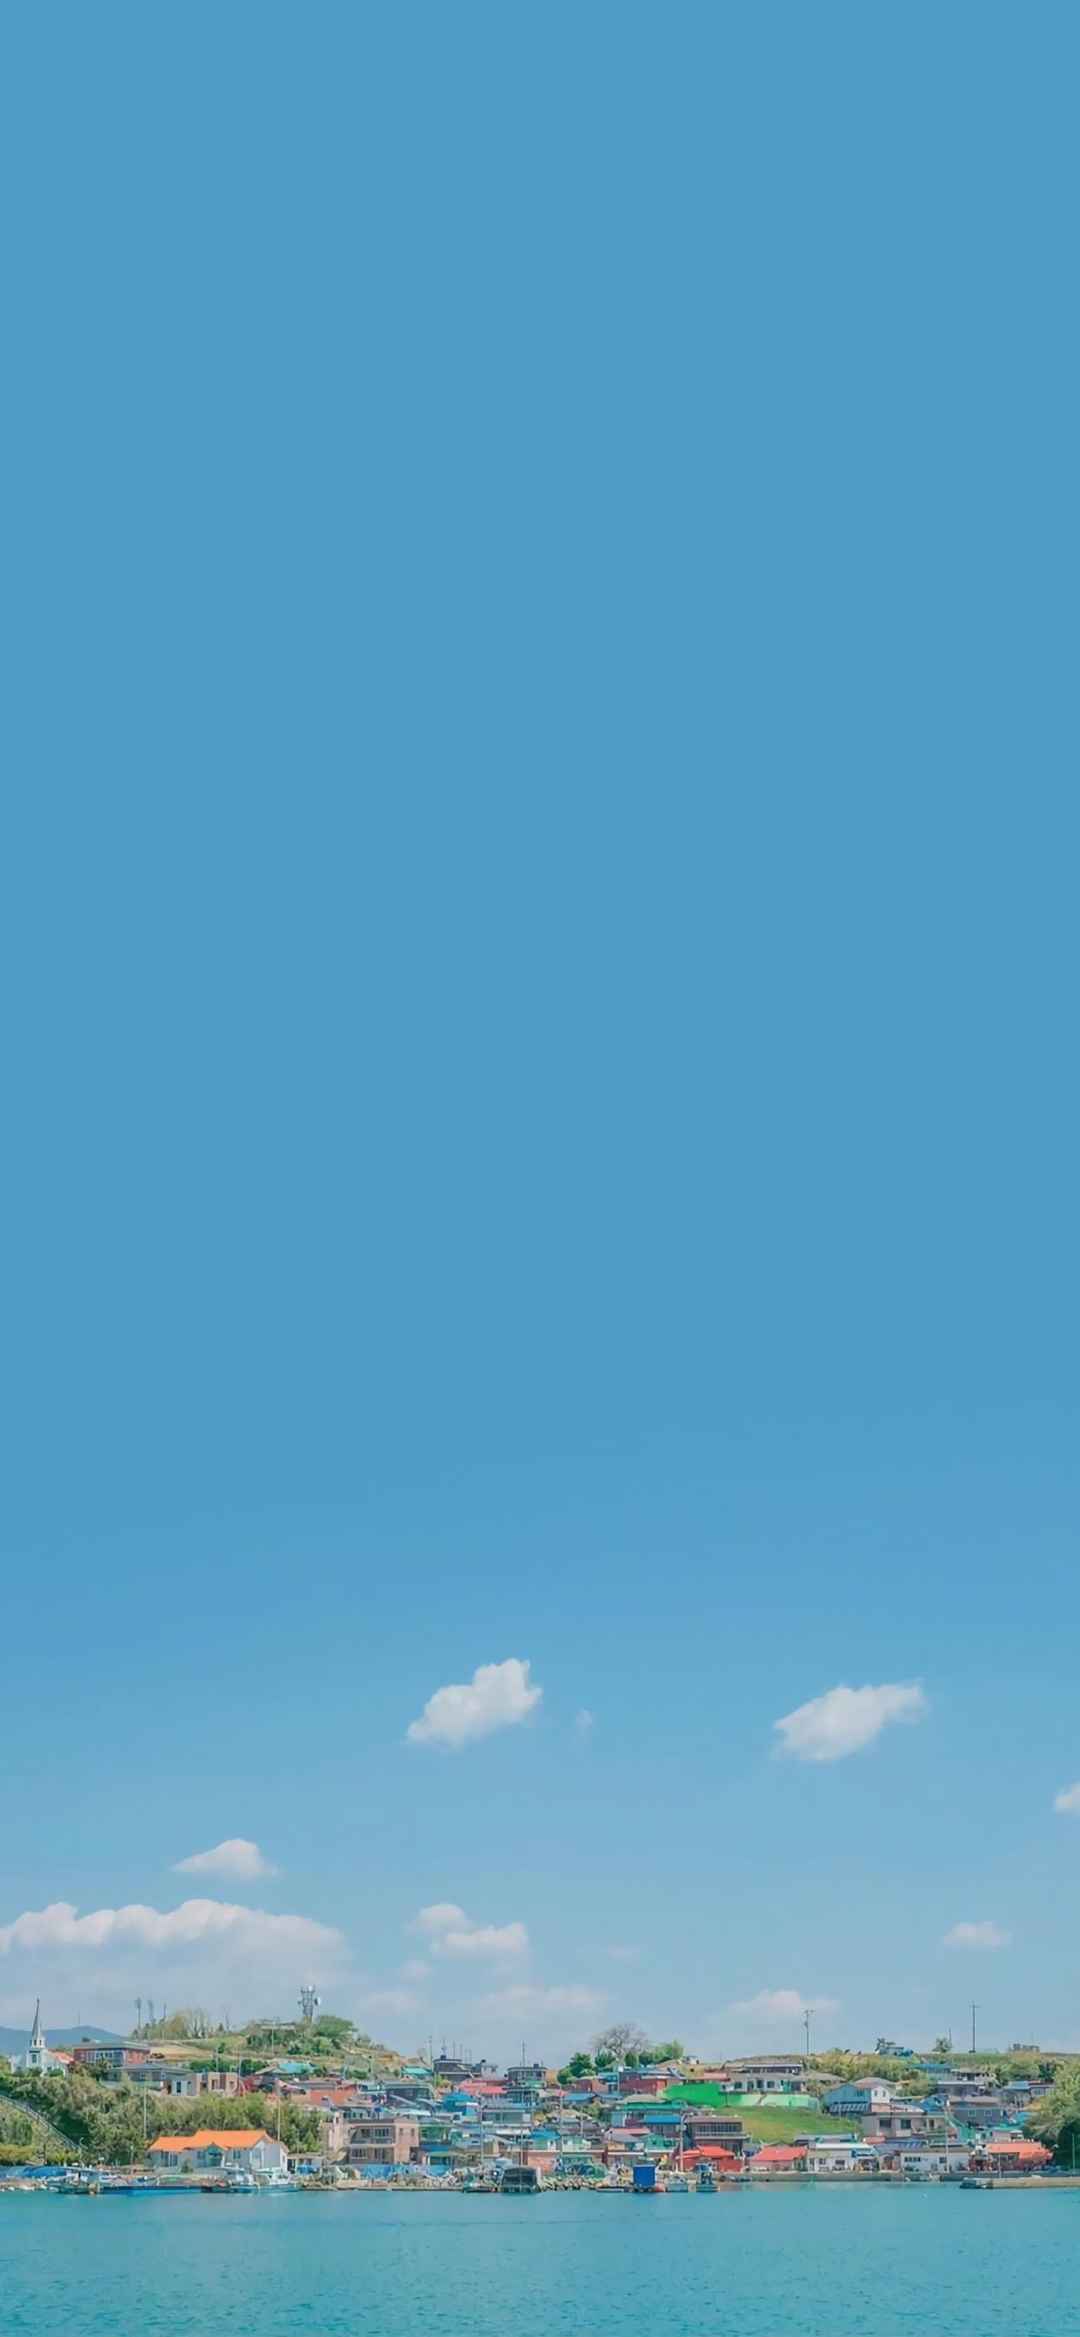 蓝天白云大自然美景手机壁纸